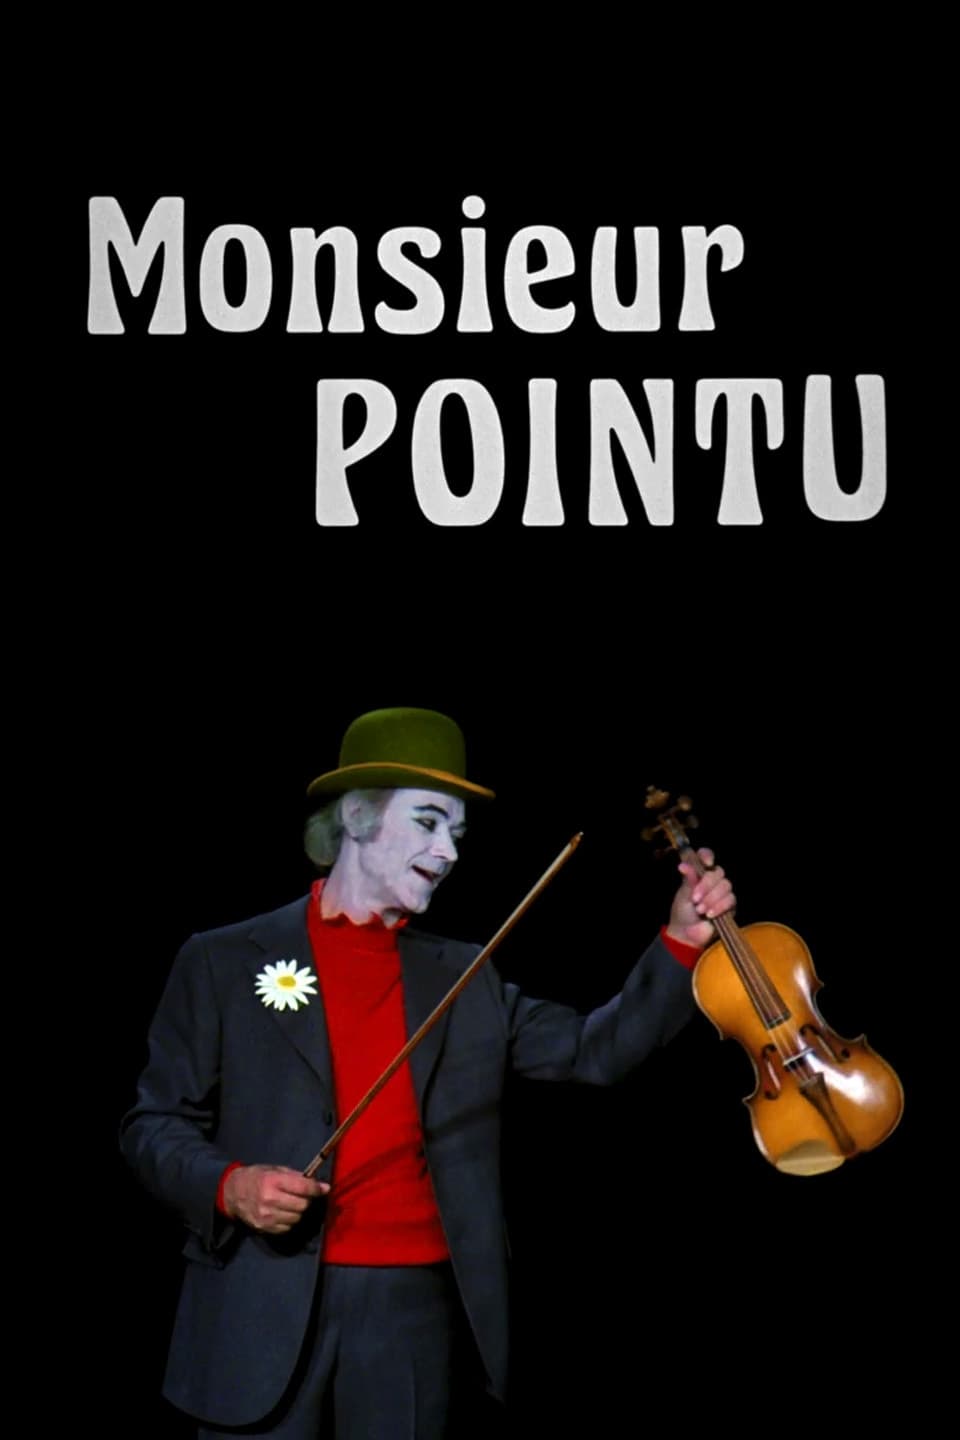 Monsieur Pointu